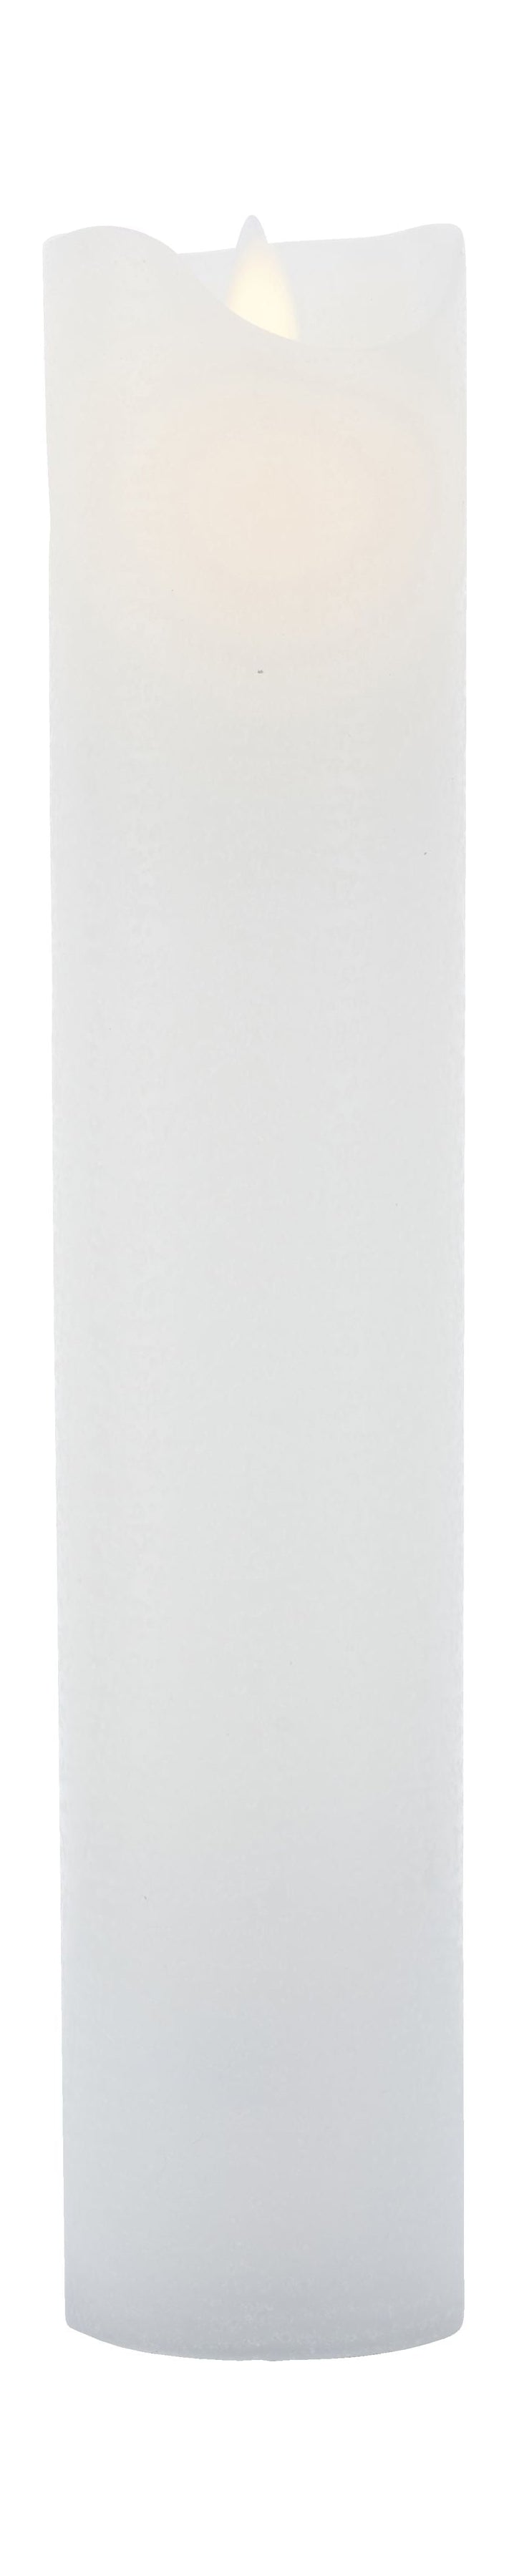 Sirius Sara ricaricabile a LED White, Ø7,5x H30cm